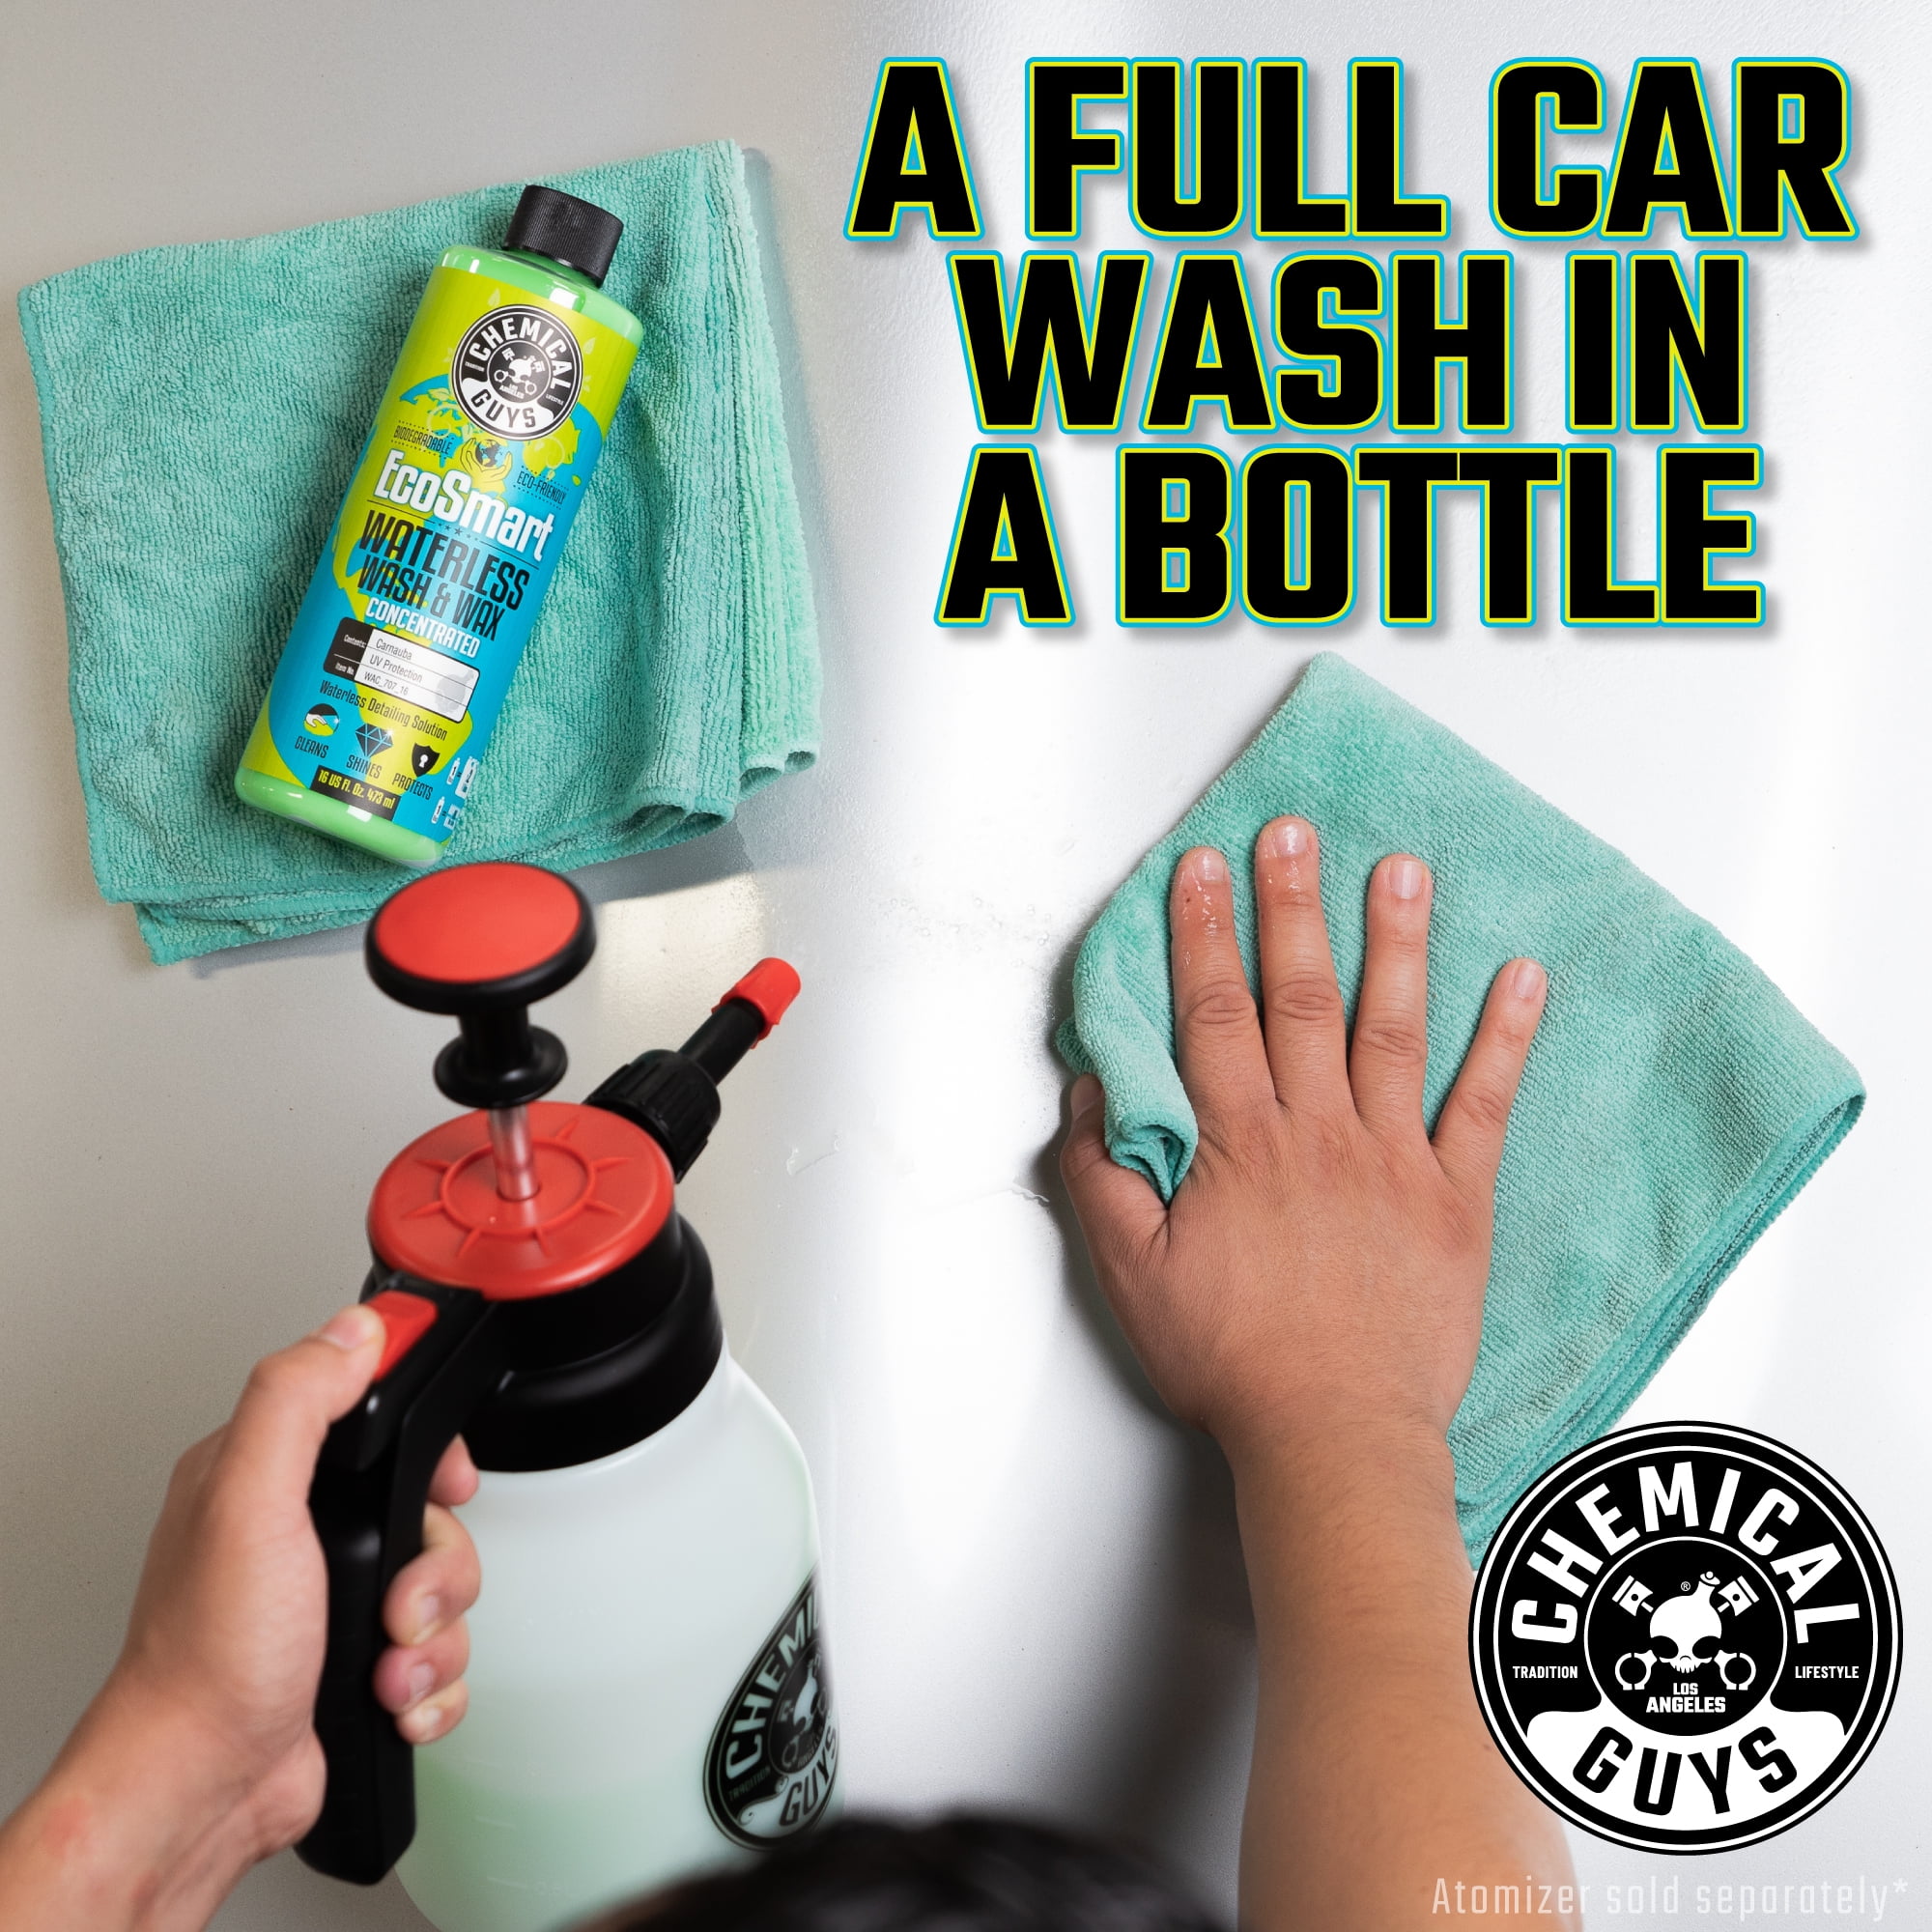 Eco Friendly Waterless Car Wash & Wax Sprayer Kit